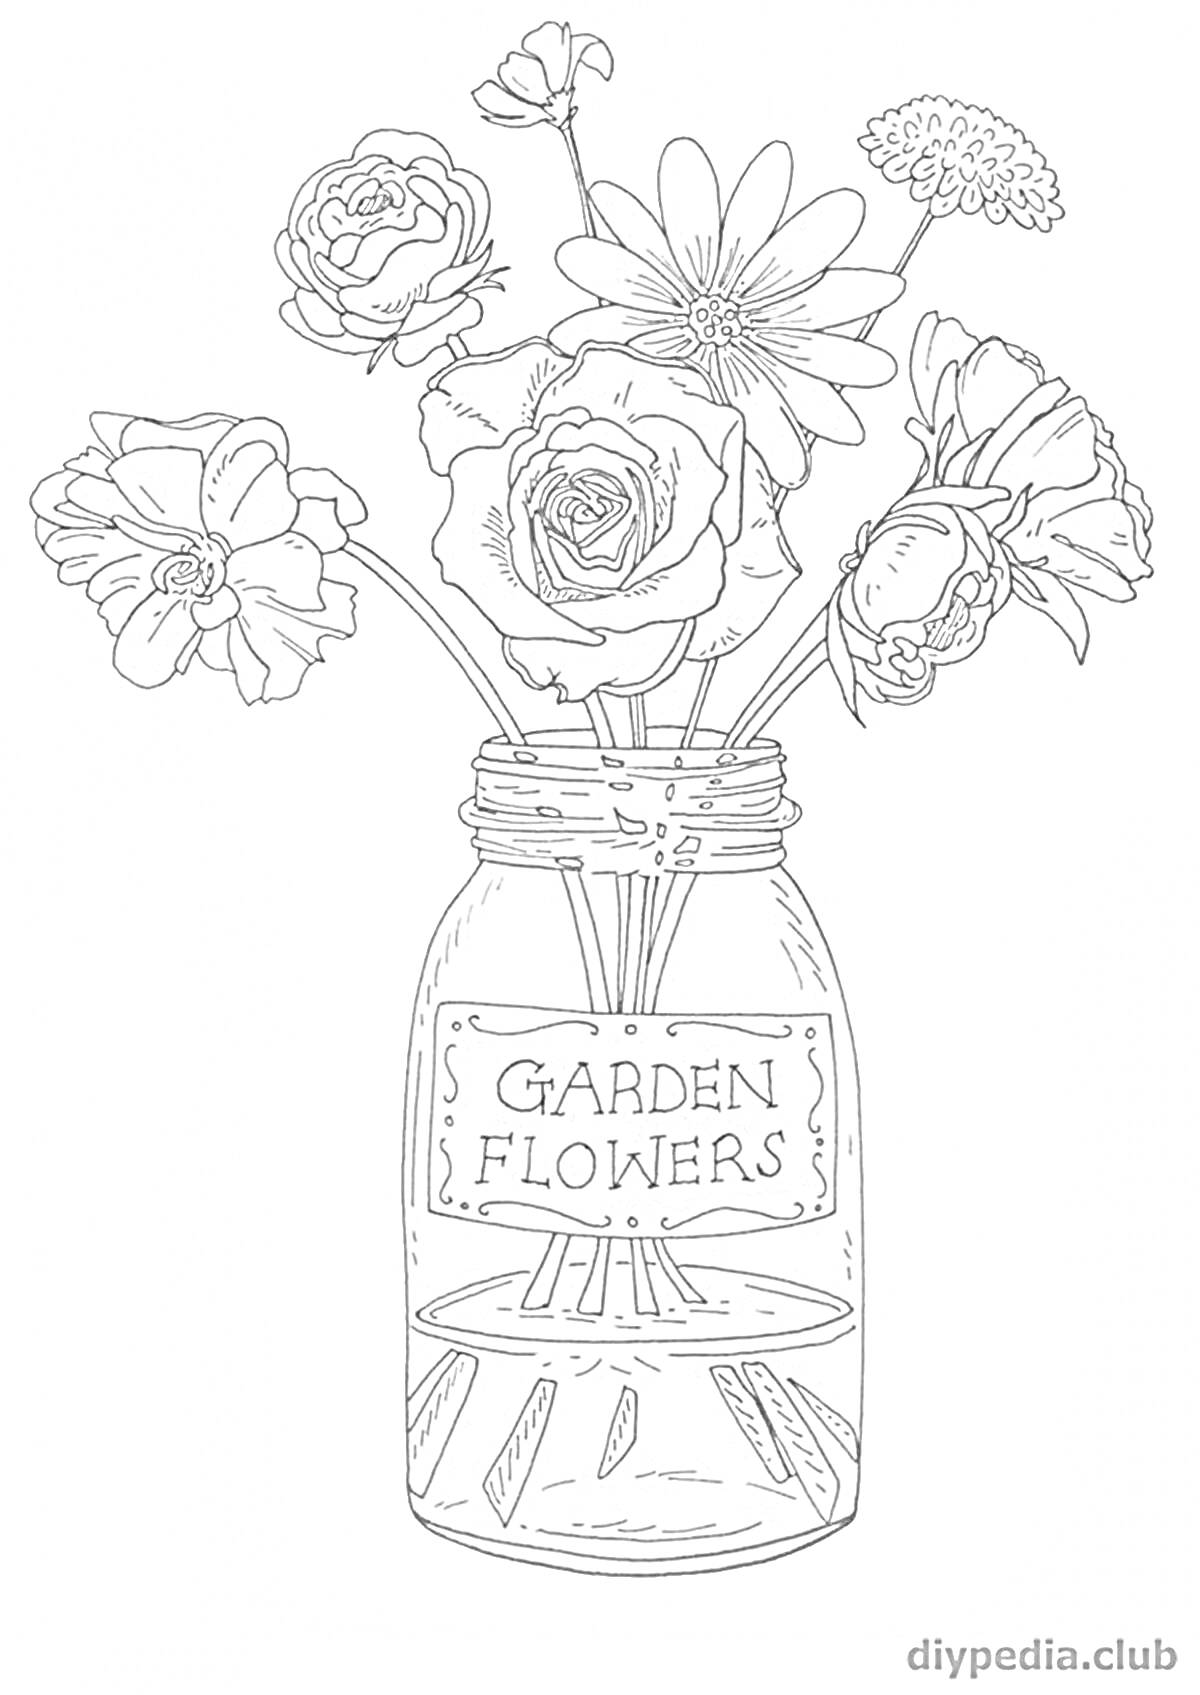 Раскраска Банка с надписью Garden Flowers и разные цветы